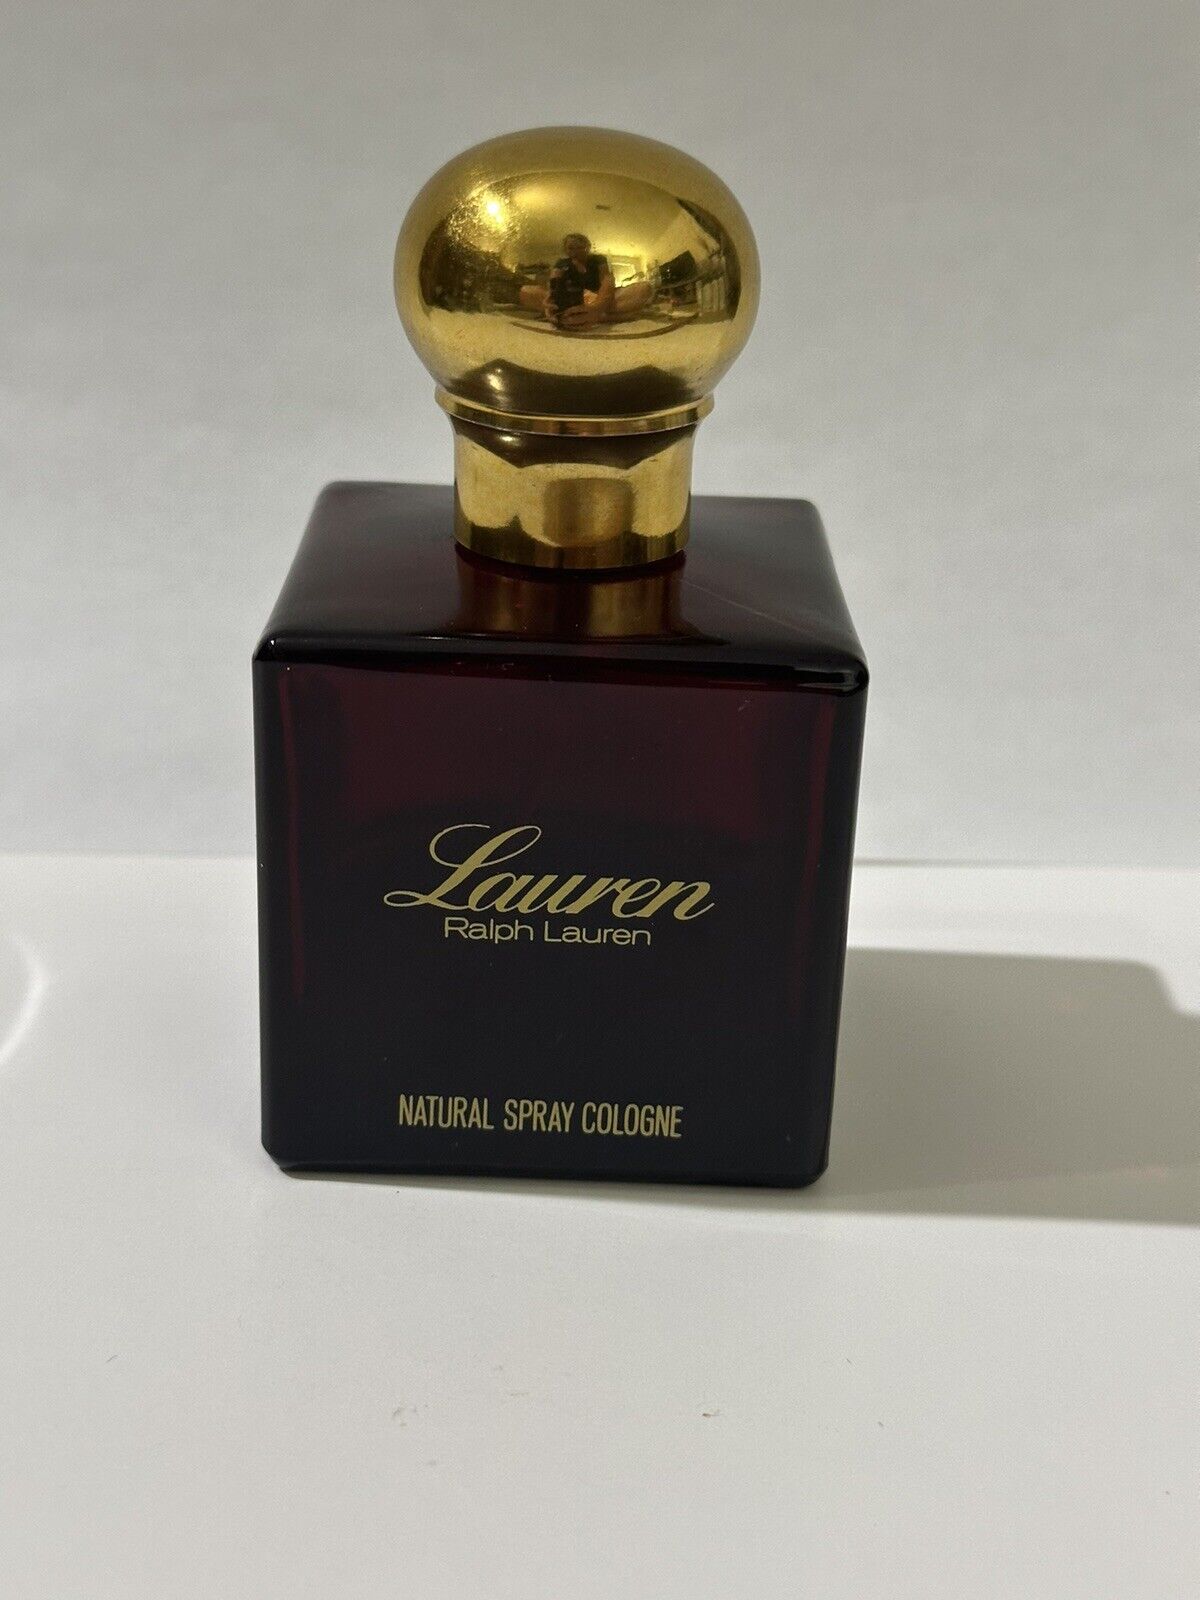 Lauren by Ralph Lauren 4OZ/118ML Natural Spray Cologne Perfume Vintage READ Desc